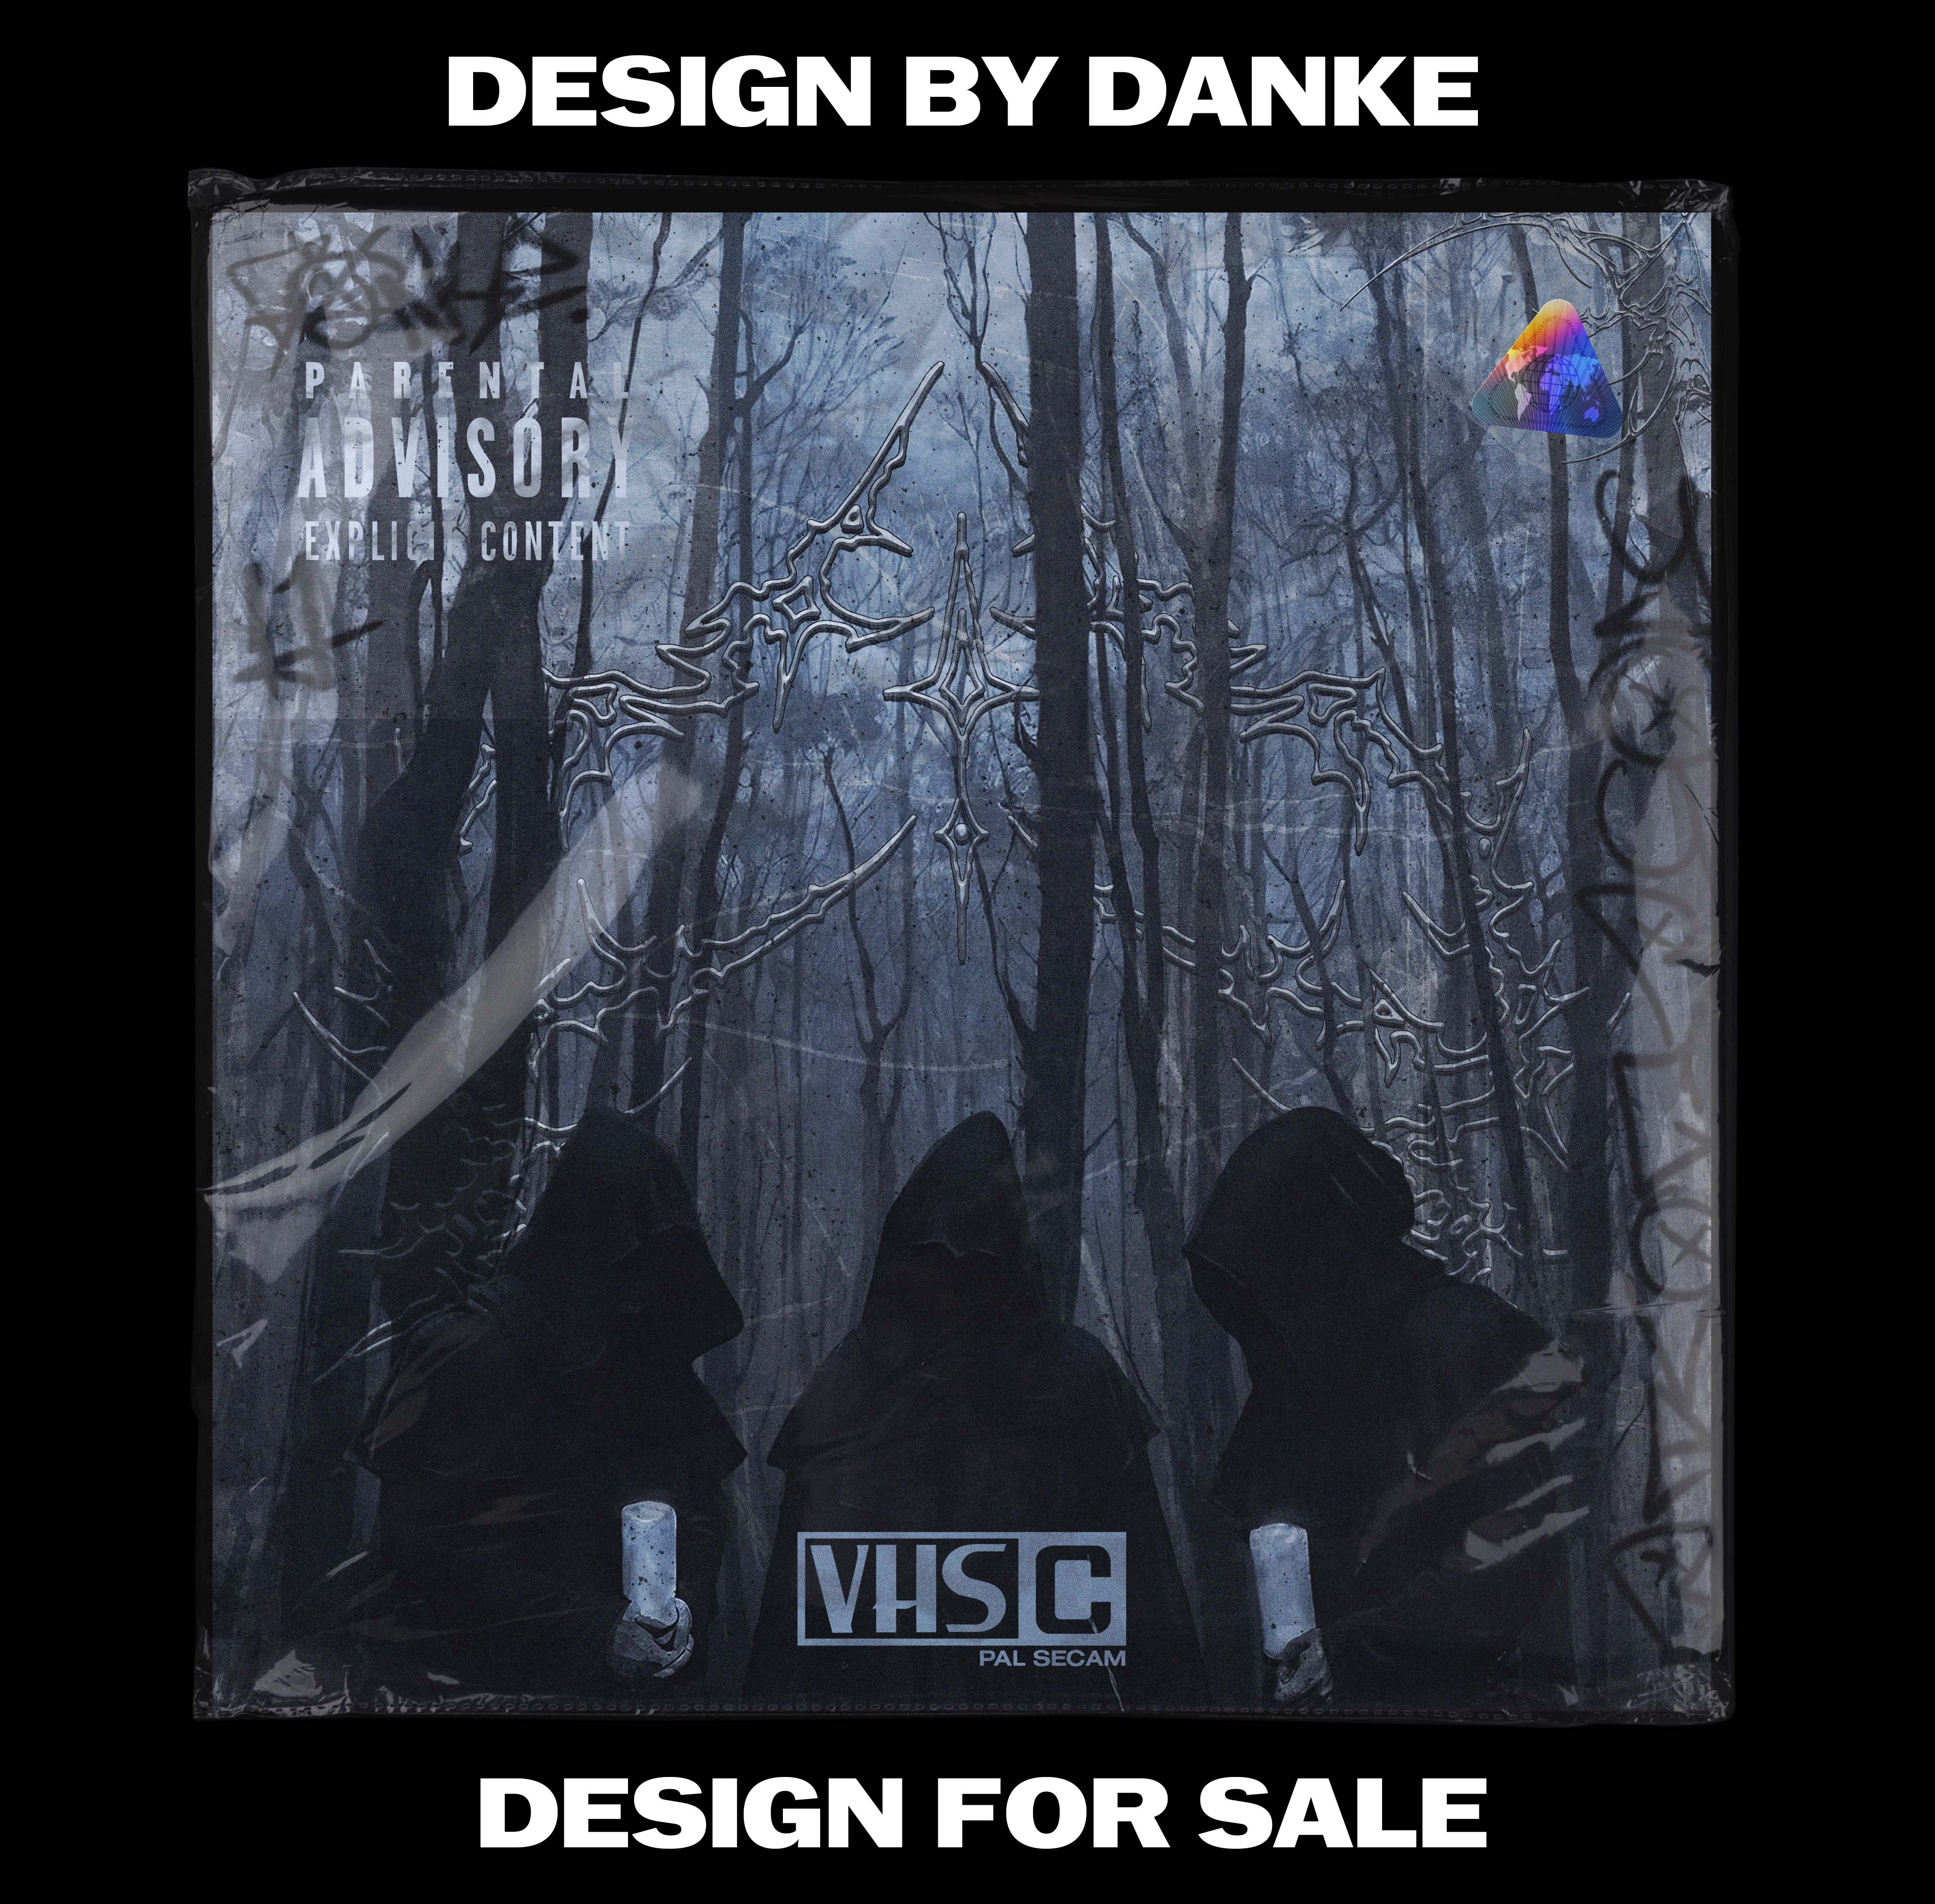 Дизайн обложки Drk frst. Обложки, стиль, музыка, графический дизайн. 